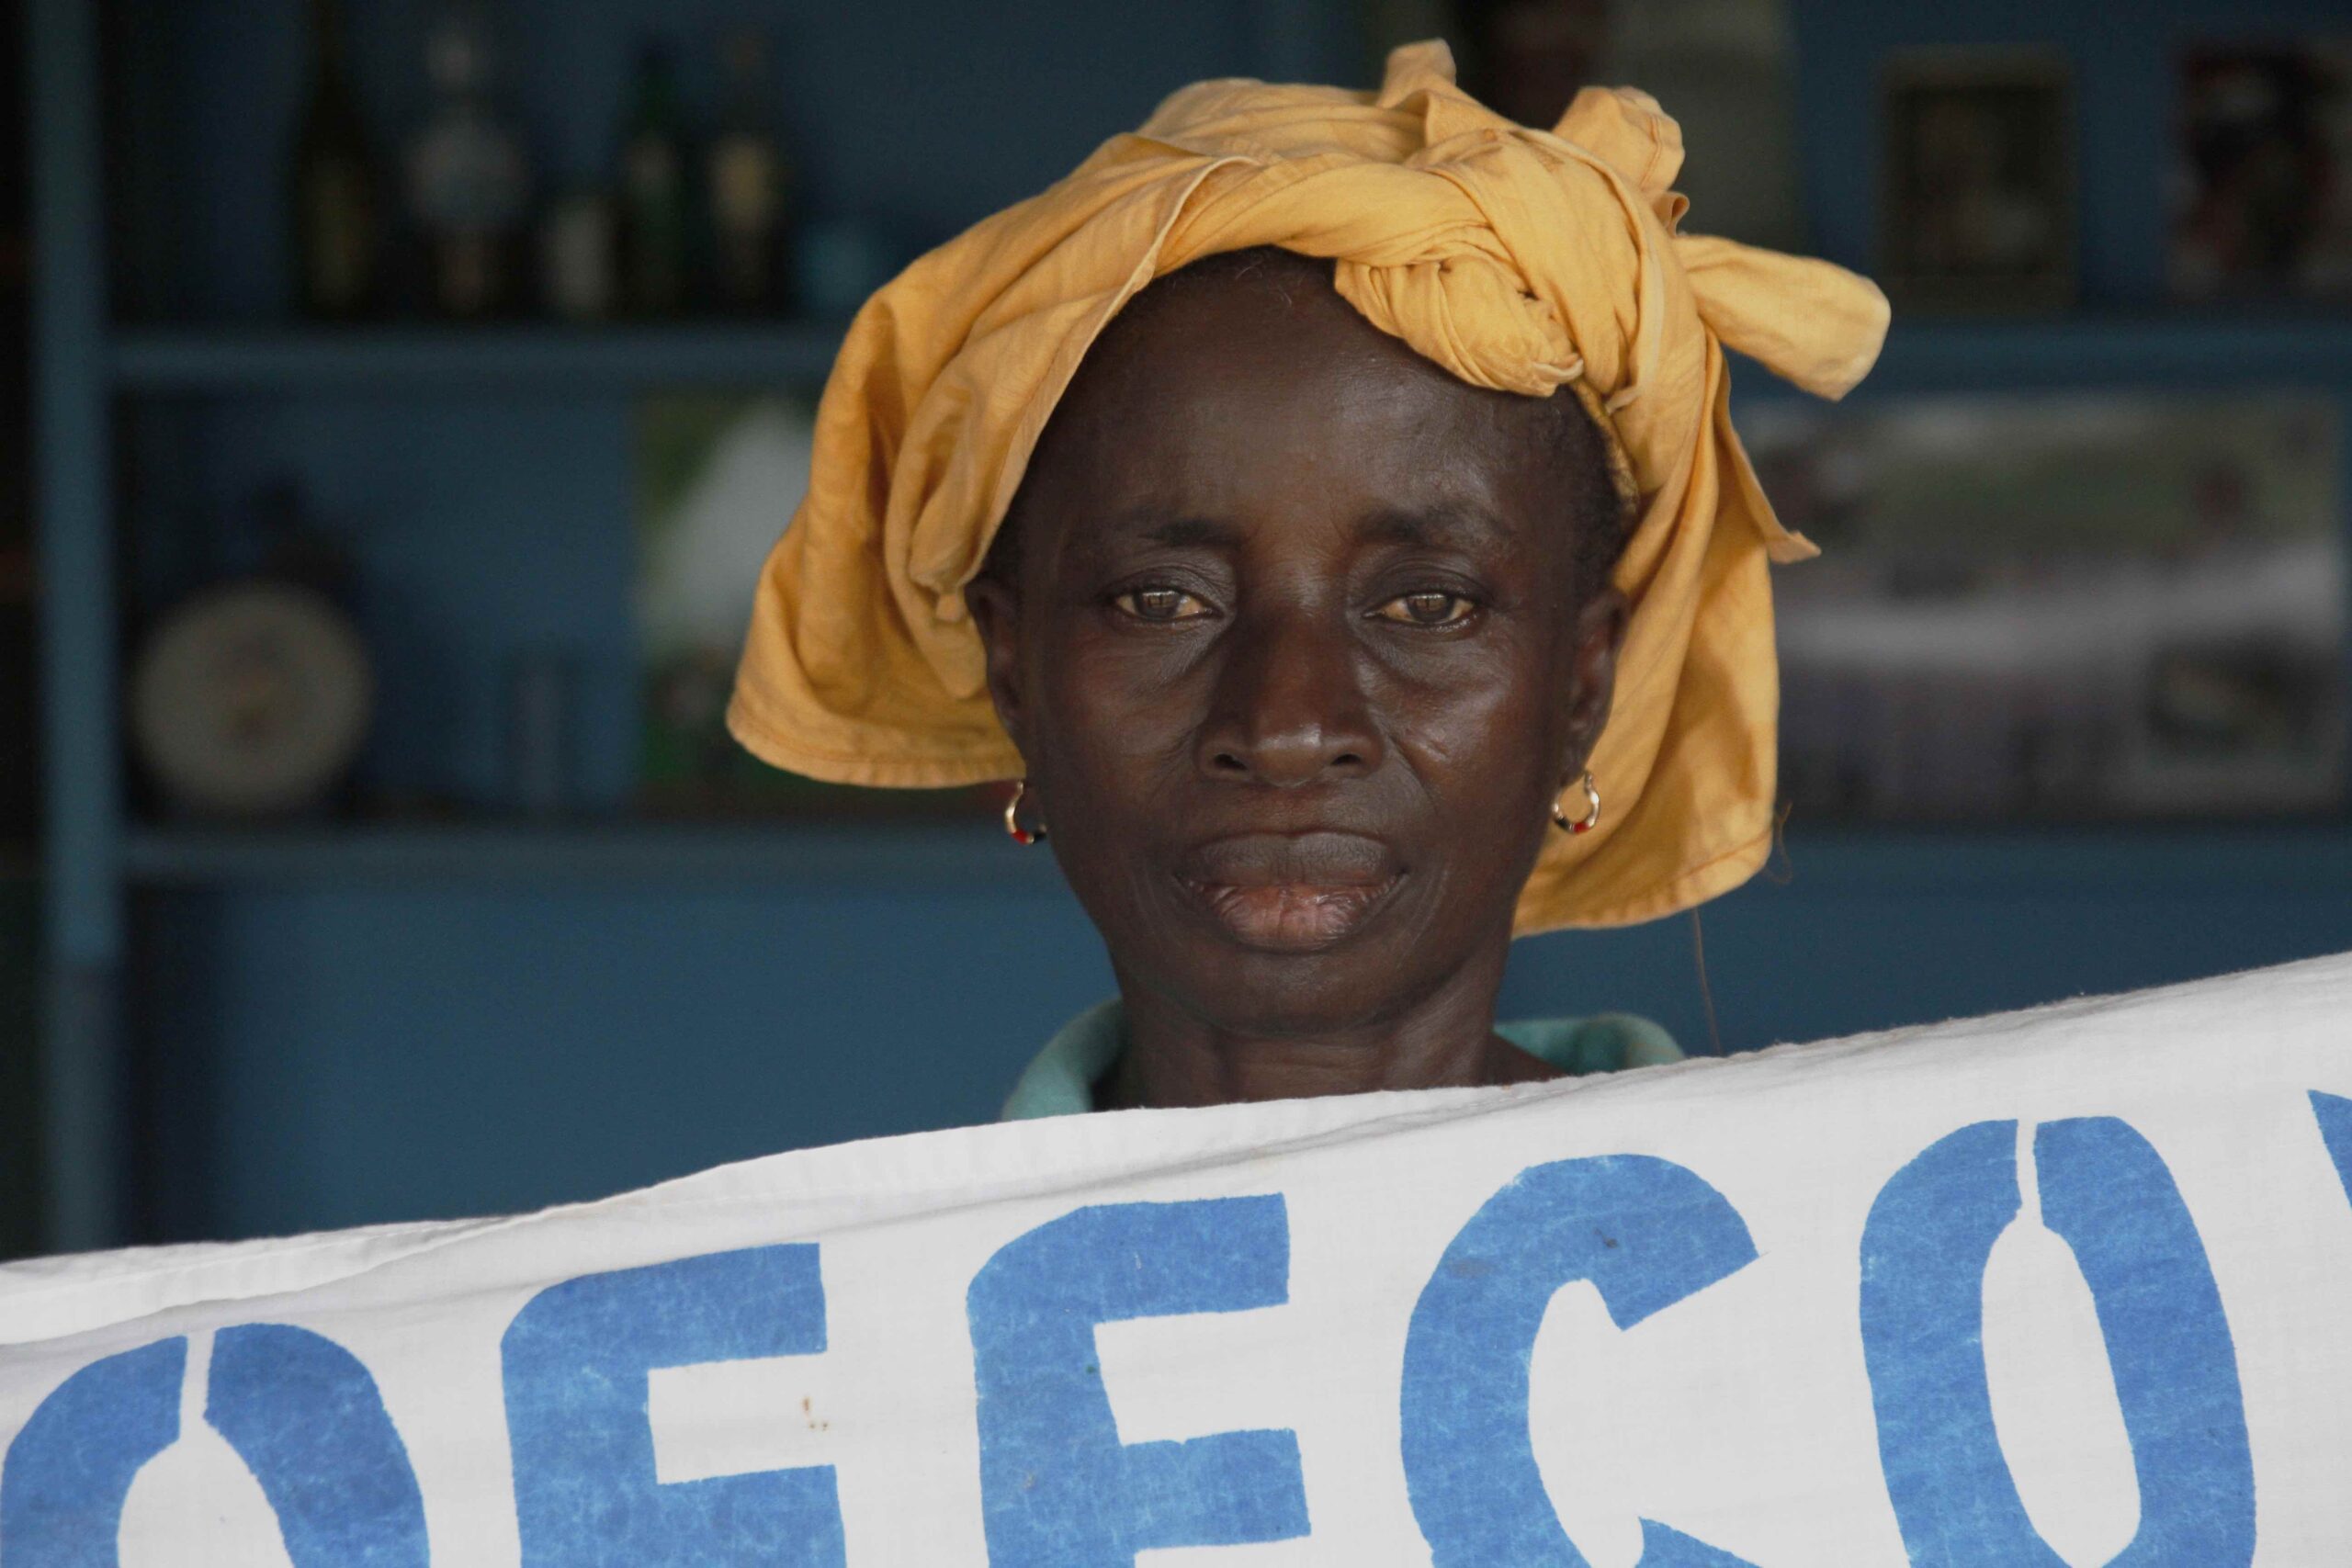 GISCO, BDSI, Cocoa EU Due Diligence legislation, Cocoa Post, Ghana, Cote d'Ivoire, Cocoa farmers, Living income, LID, Women in Cocoa,